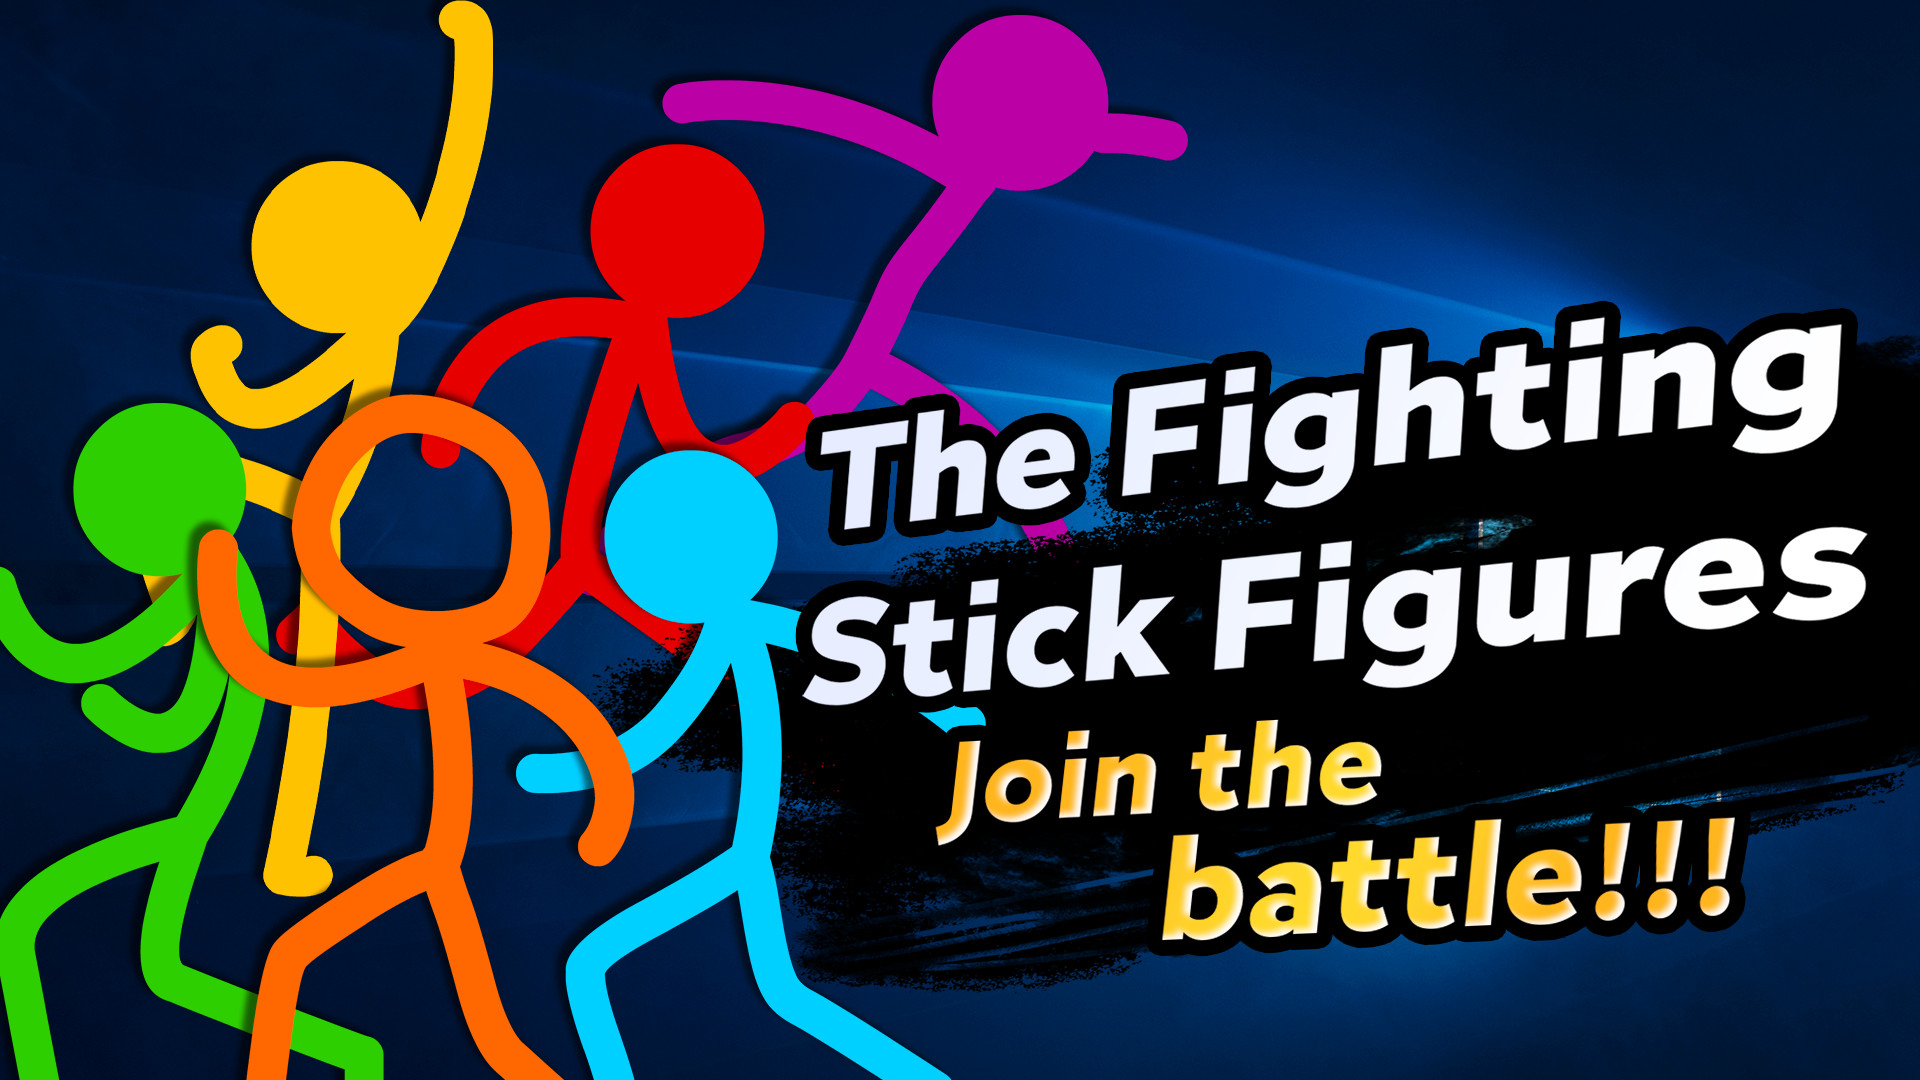 8 Stickman Fighters ideas  character art, stick art, stick figures